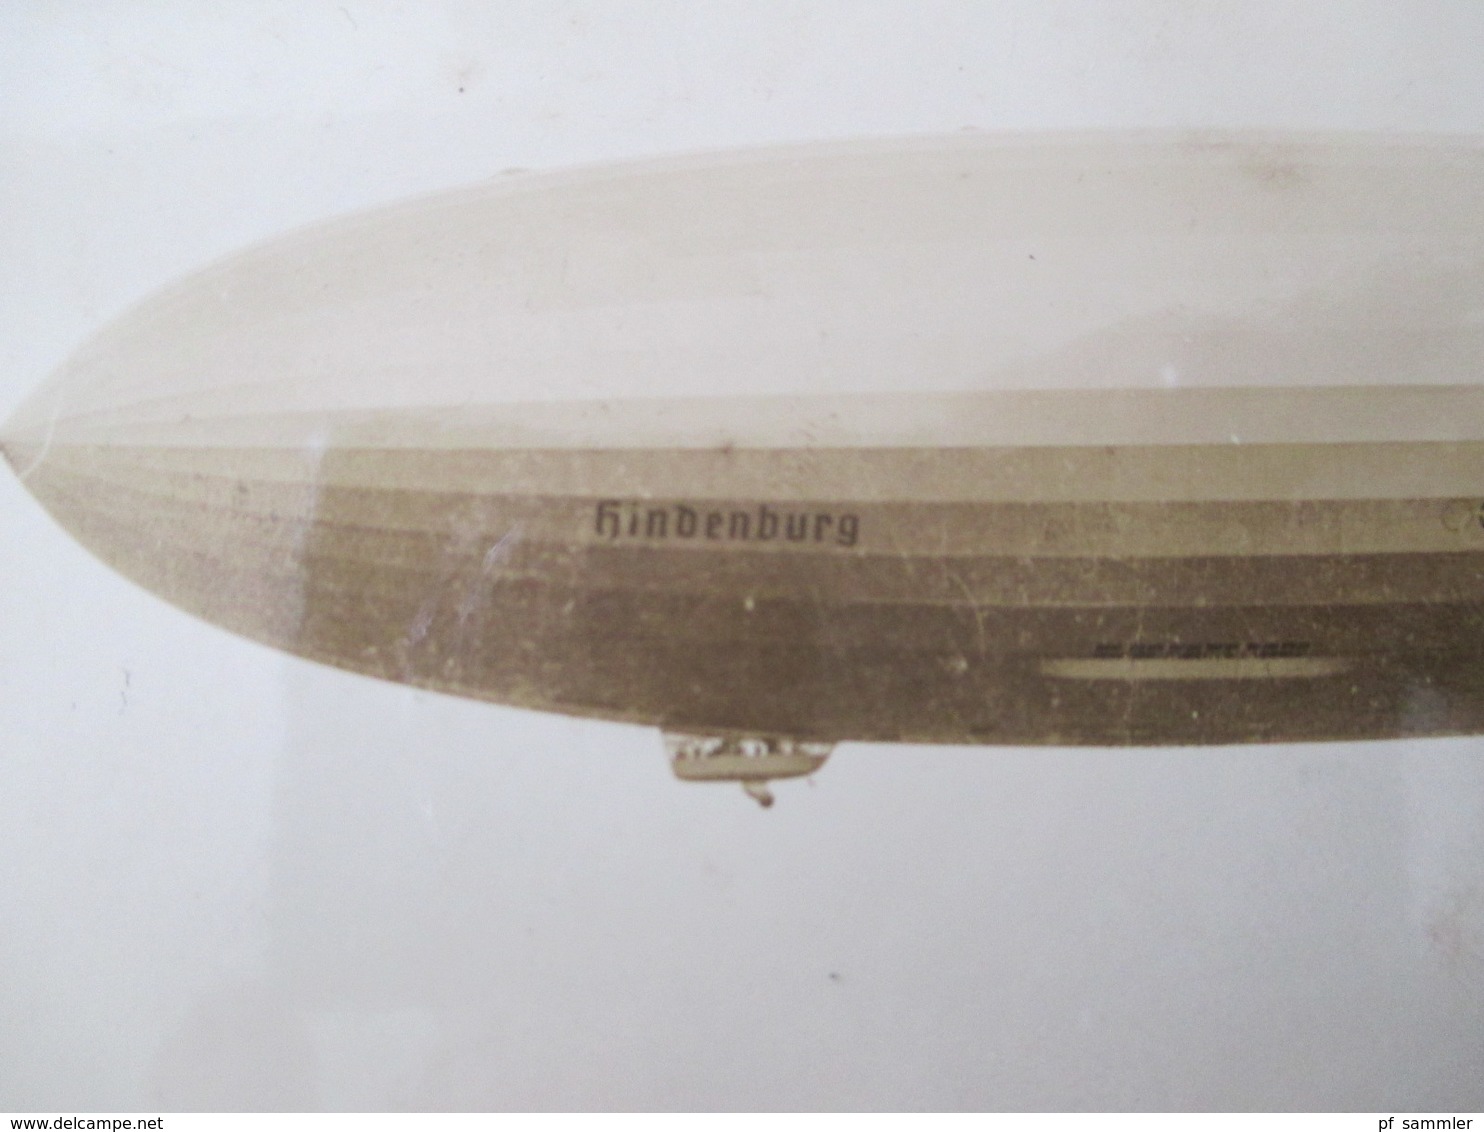 Echtfoto 1936 AK The Hindenburg D-LZ 129 N.A.S. Lakehurst N.J. Mit Stempel Flug Und Luftschiffhafen Rhein-Main Frankfurt - Dirigeables